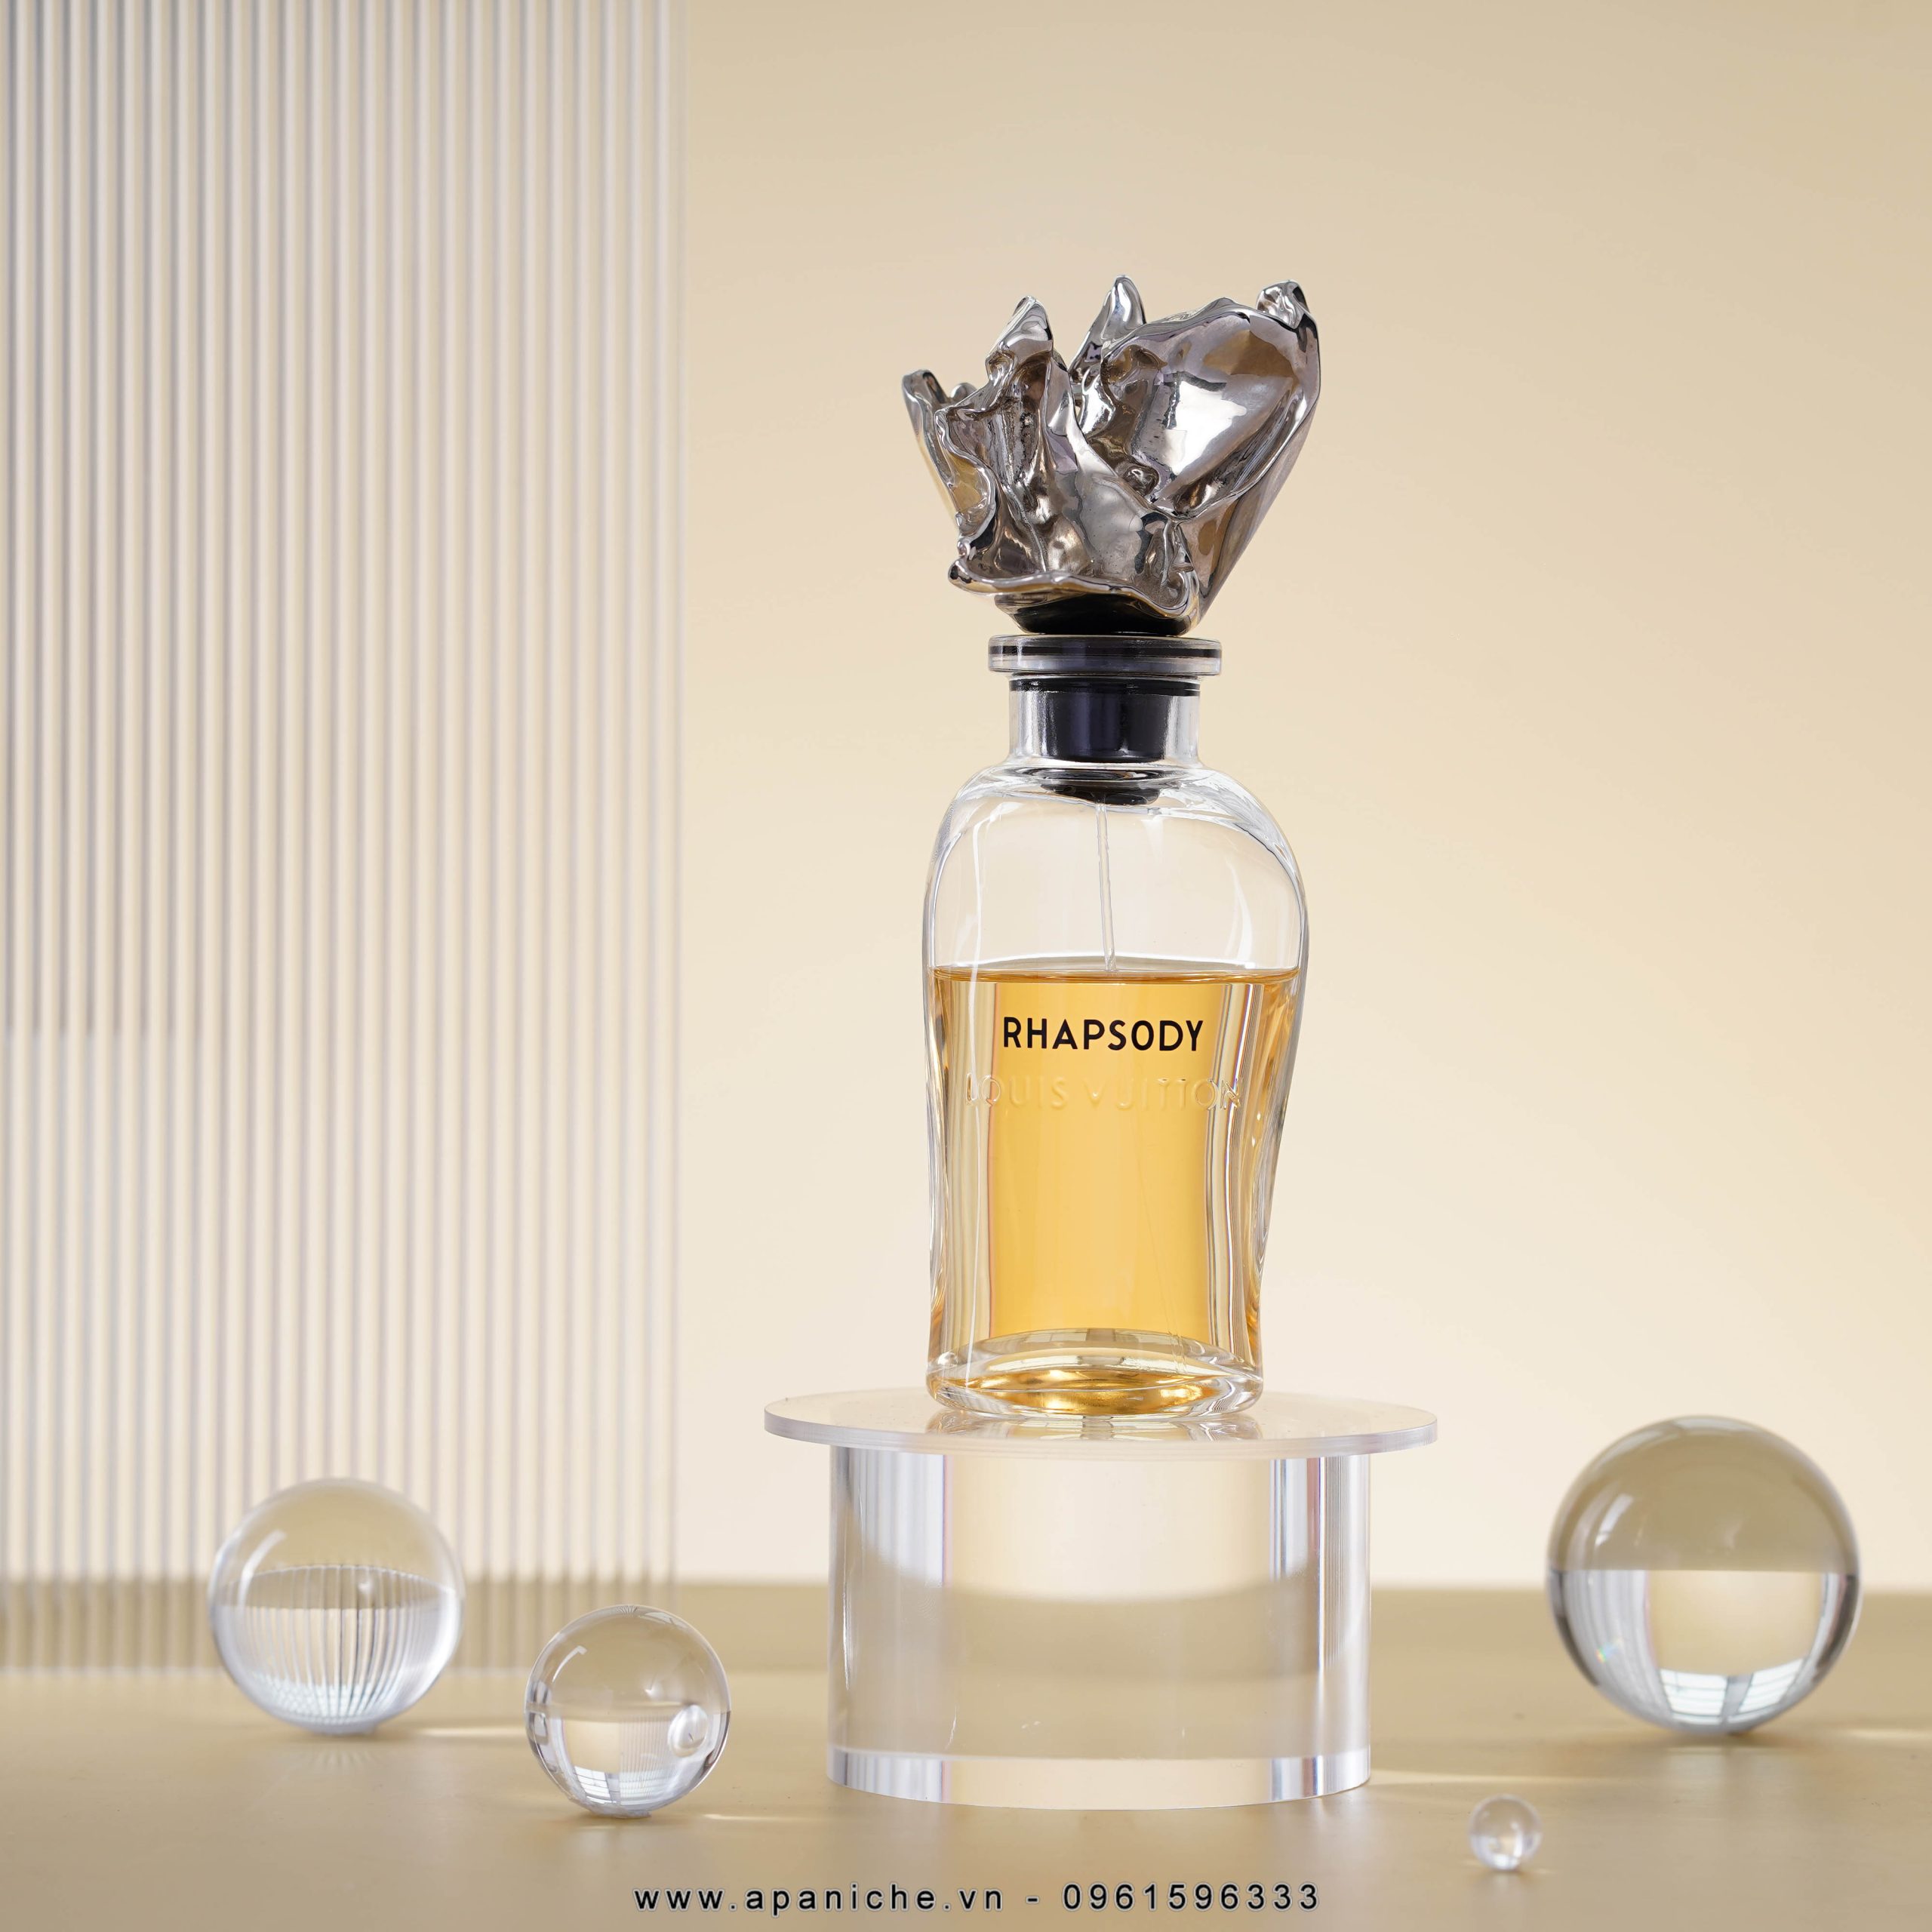 Louis Vuitton Rhapsody Perfume Review